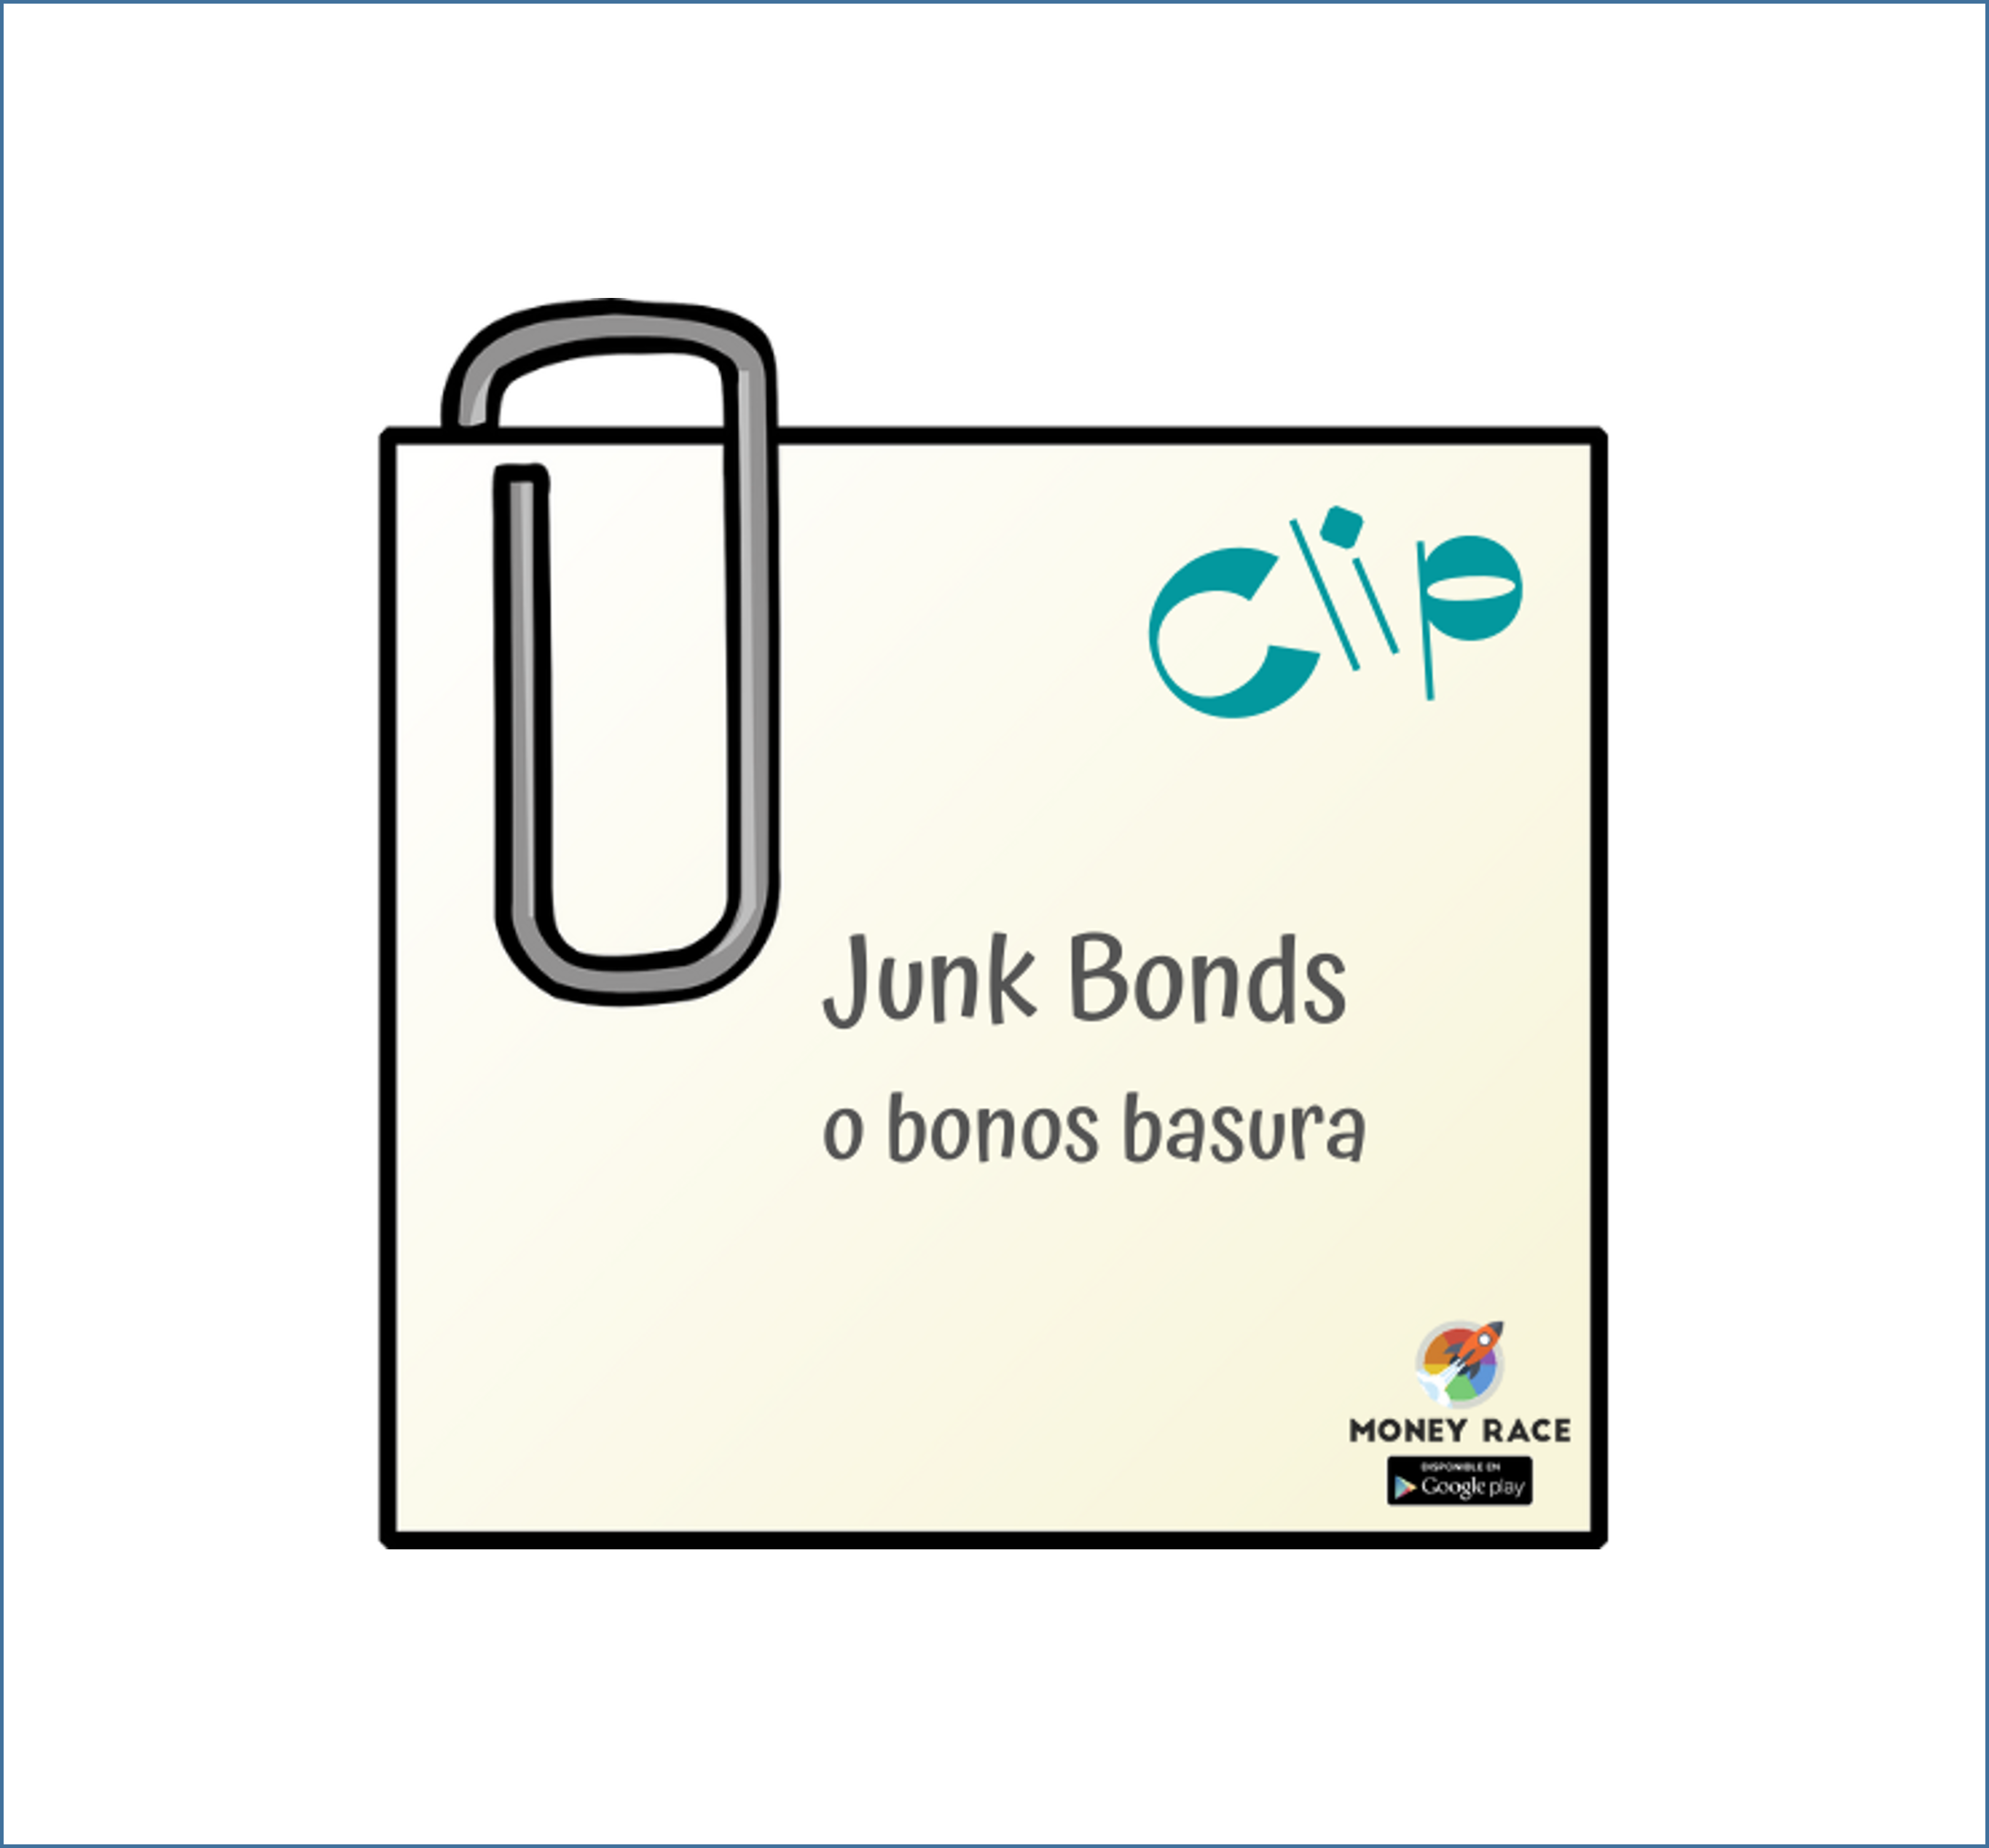 qué son los bonos basura o junk bonds